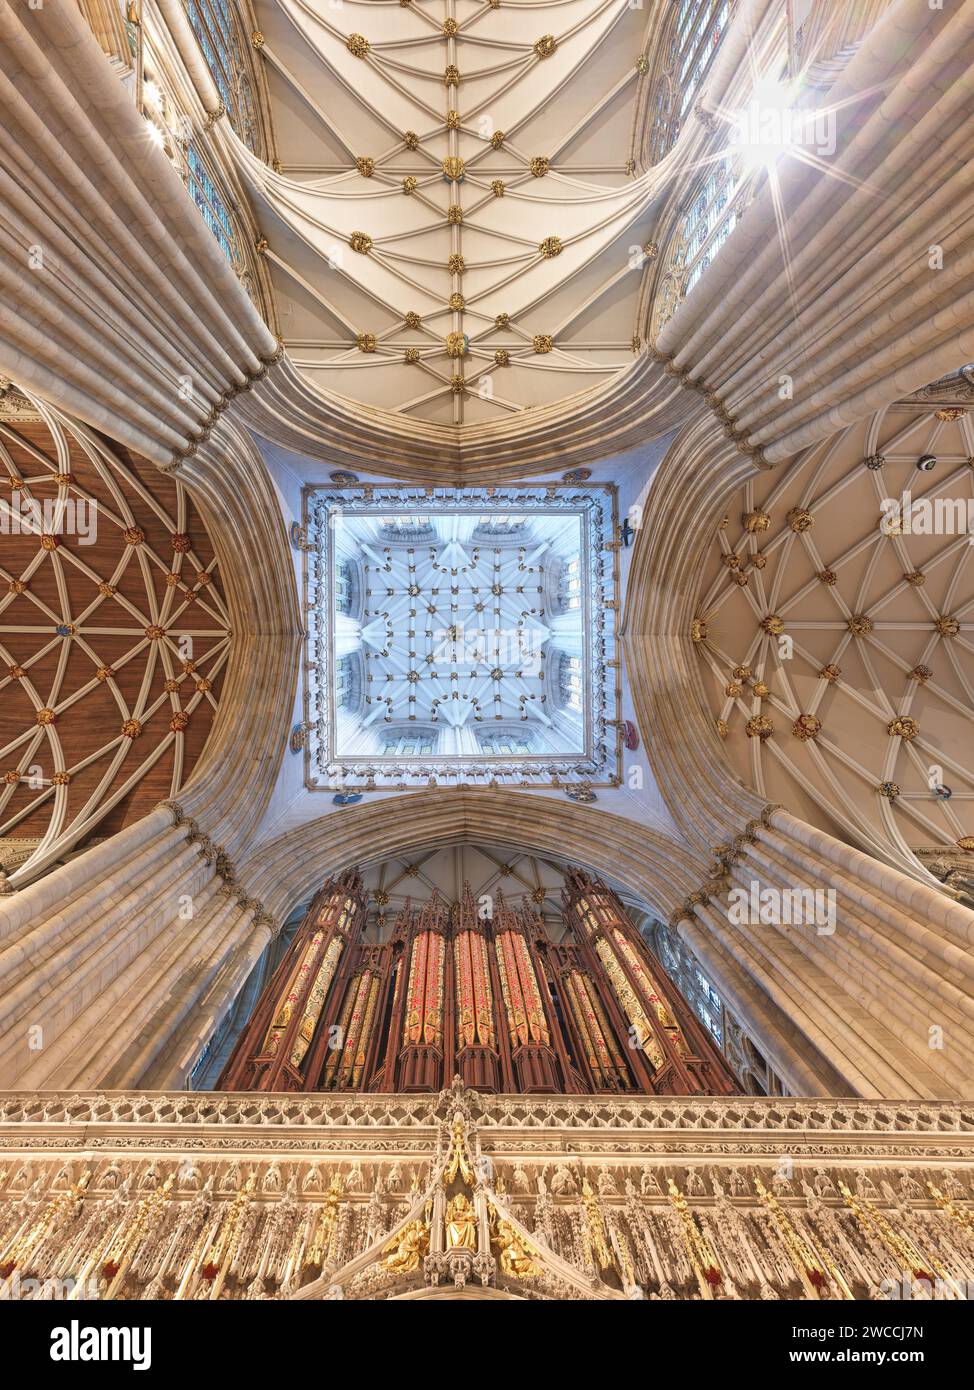 Plafond, avec des bossages décorés, sous la tour centrale de la cathédrale de York, Angleterre. Banque D'Images